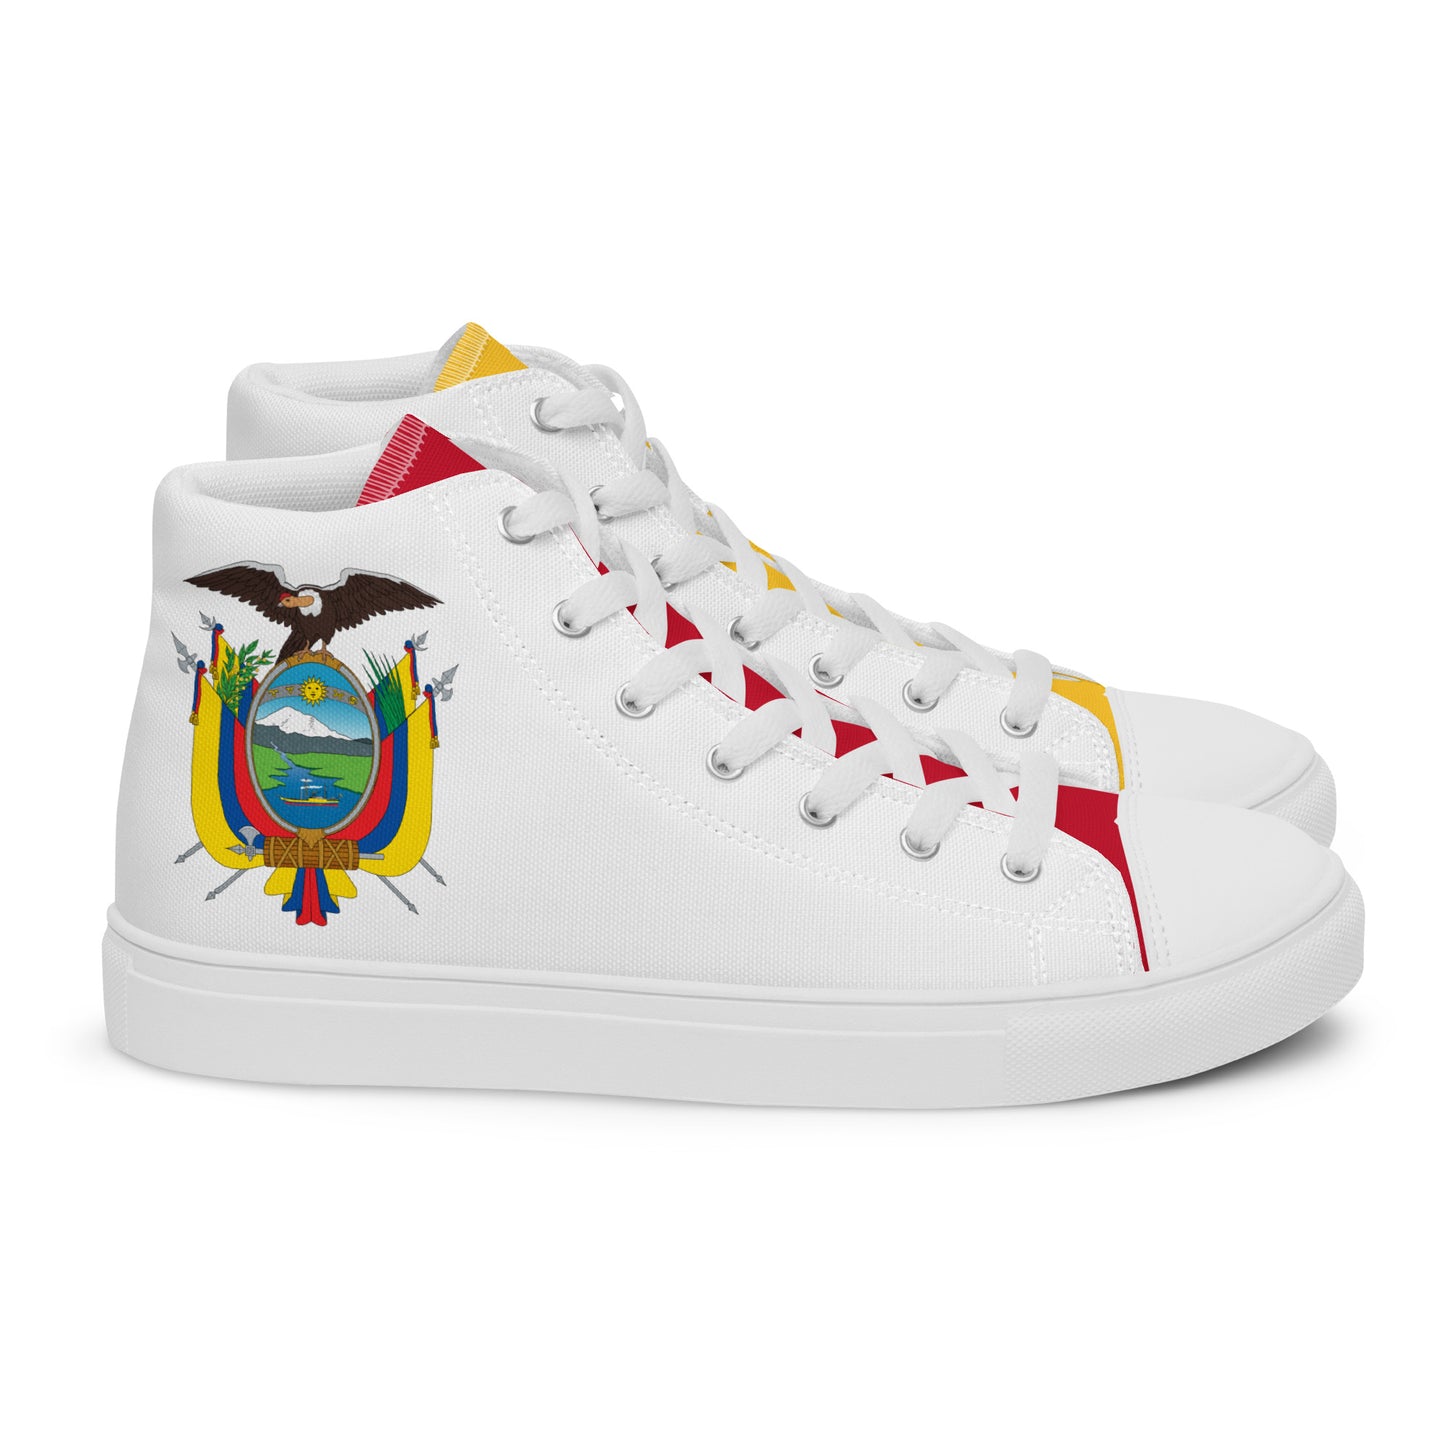 Ecuador - Men - White - High top shoes